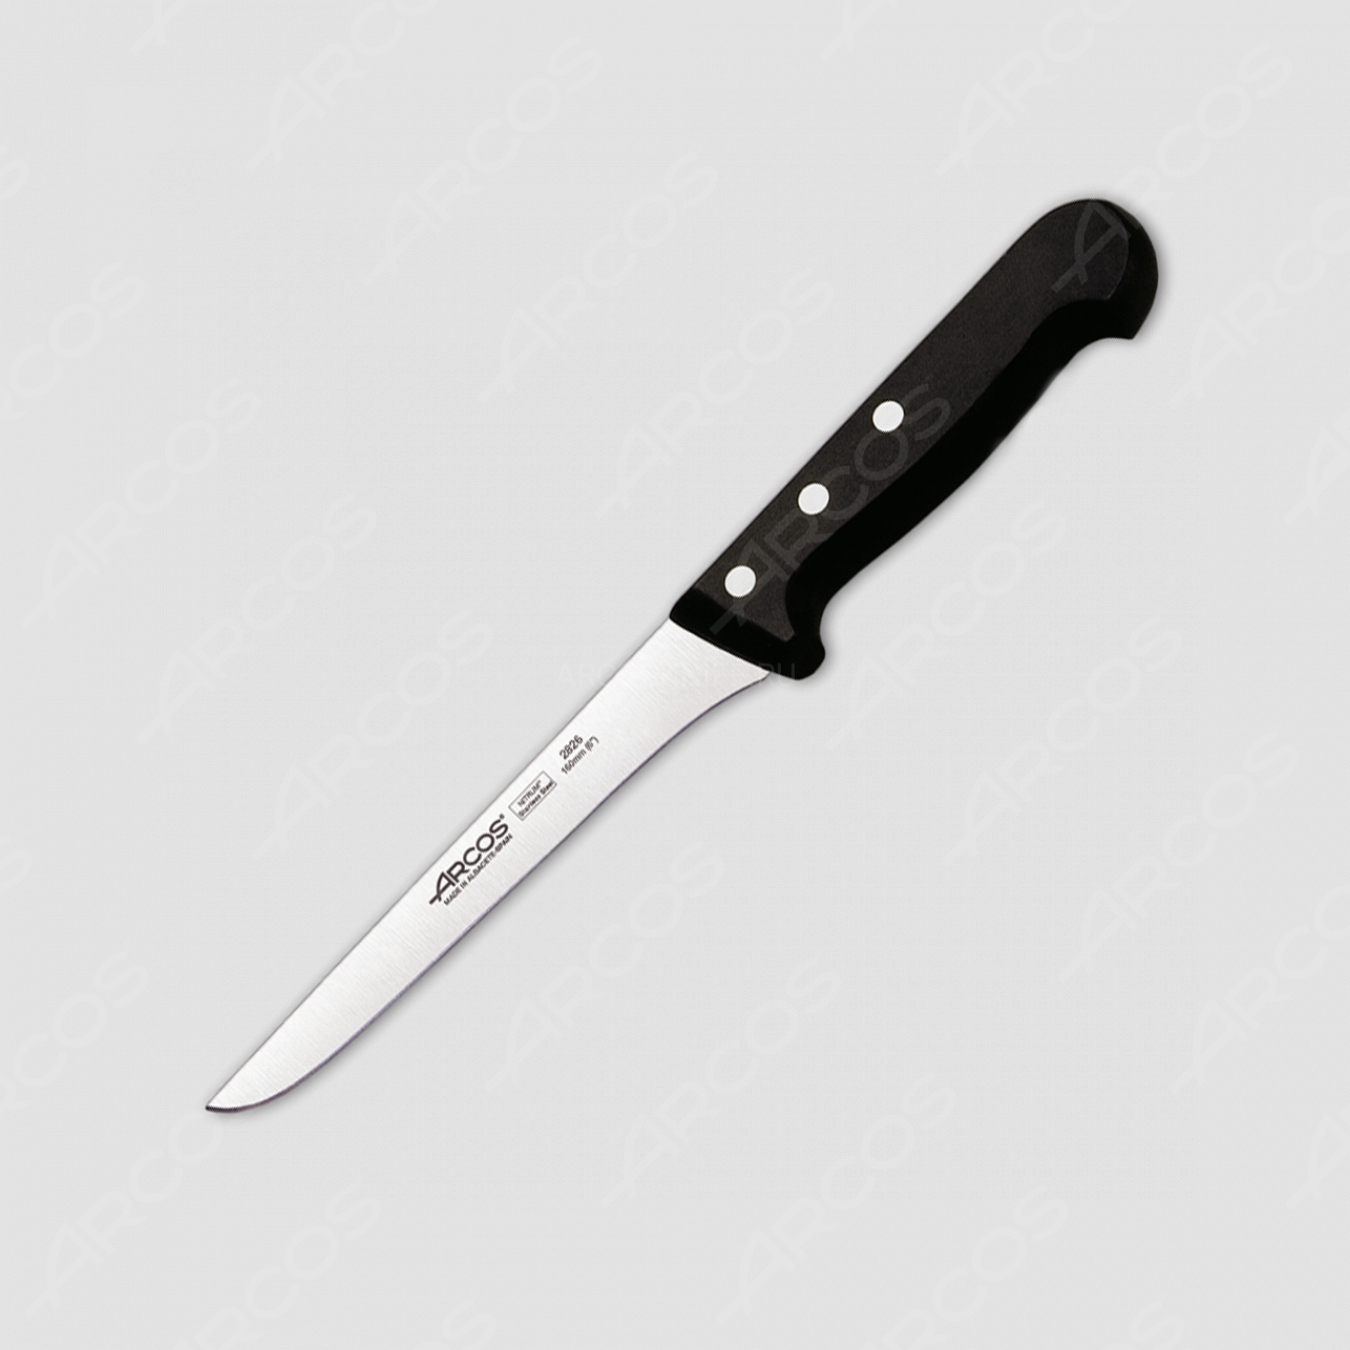 Нож кухонный обвалочный 16 см, серия Universal, ARCOS, Испания